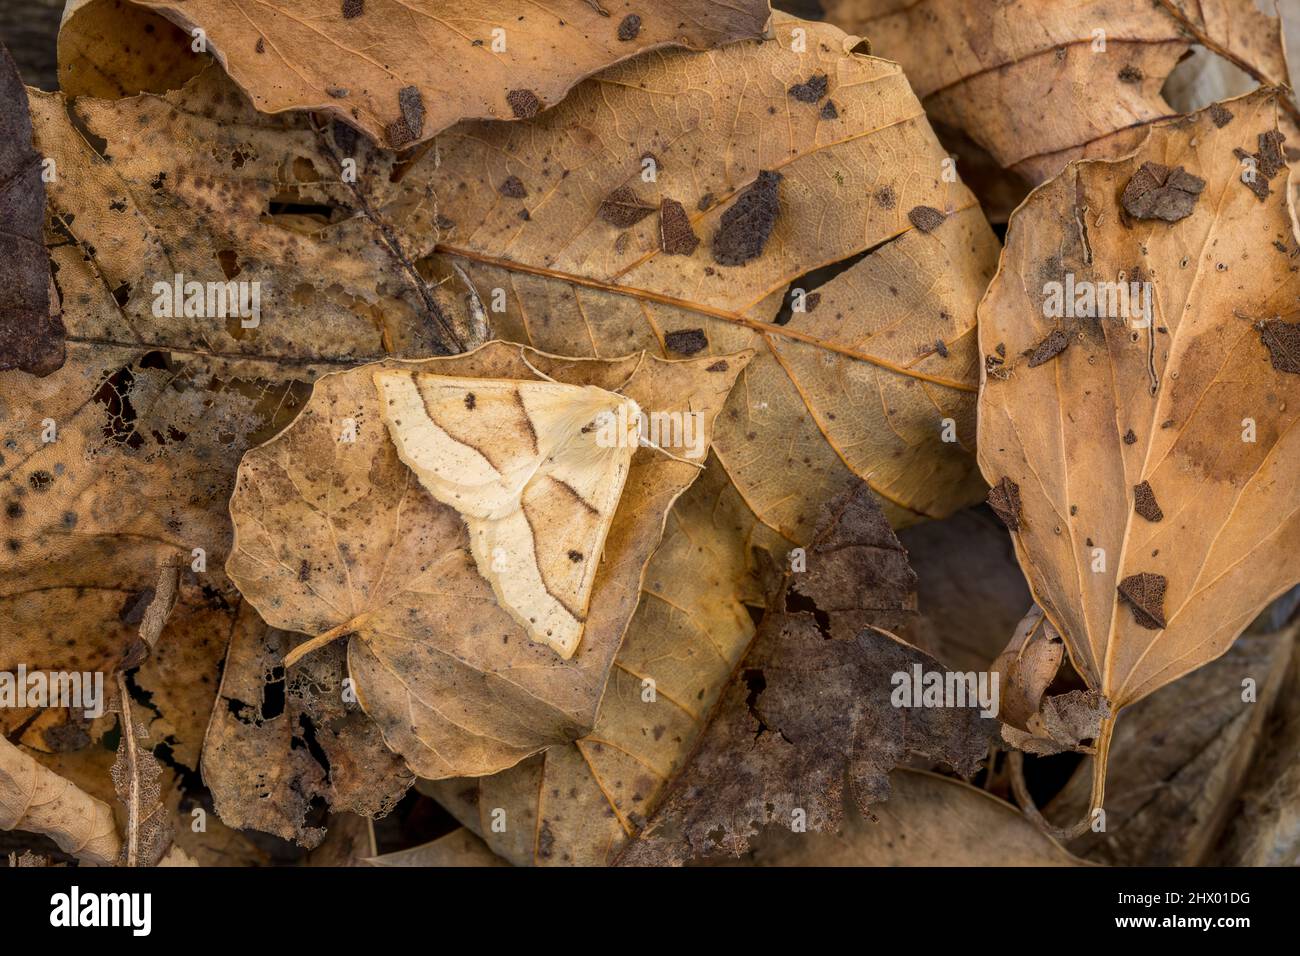 Scalloped Oak Moth; Crocallis elinguaria; on Fallen Leaves; UK Stock Photo